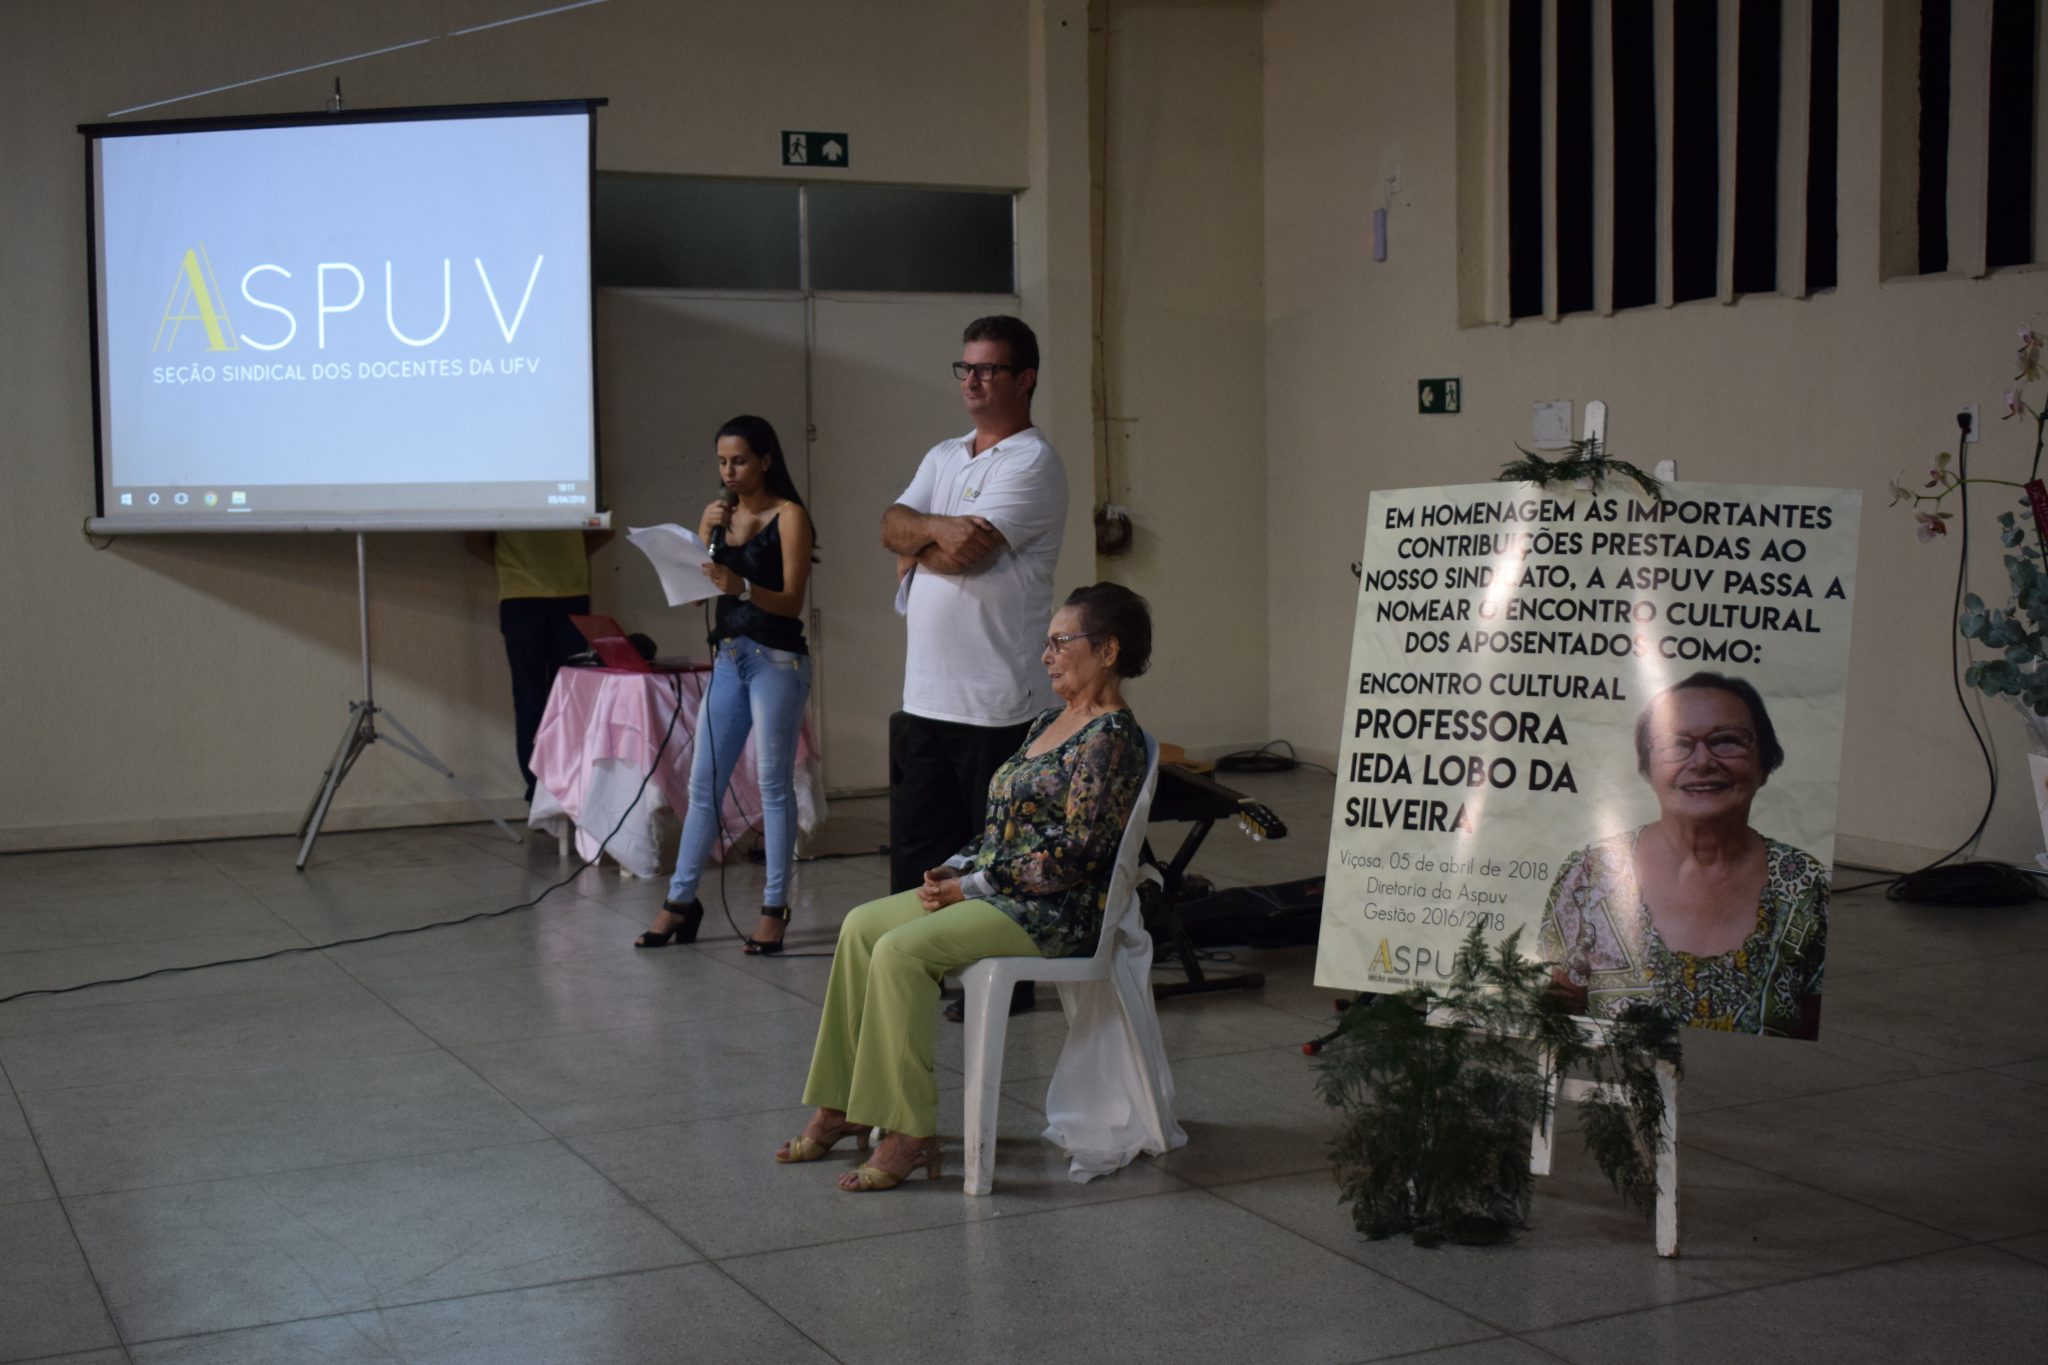 Professora Ieda Lobo da Silveira passa a dar nome a encontro dos aposentados, realizado pela Aspuv